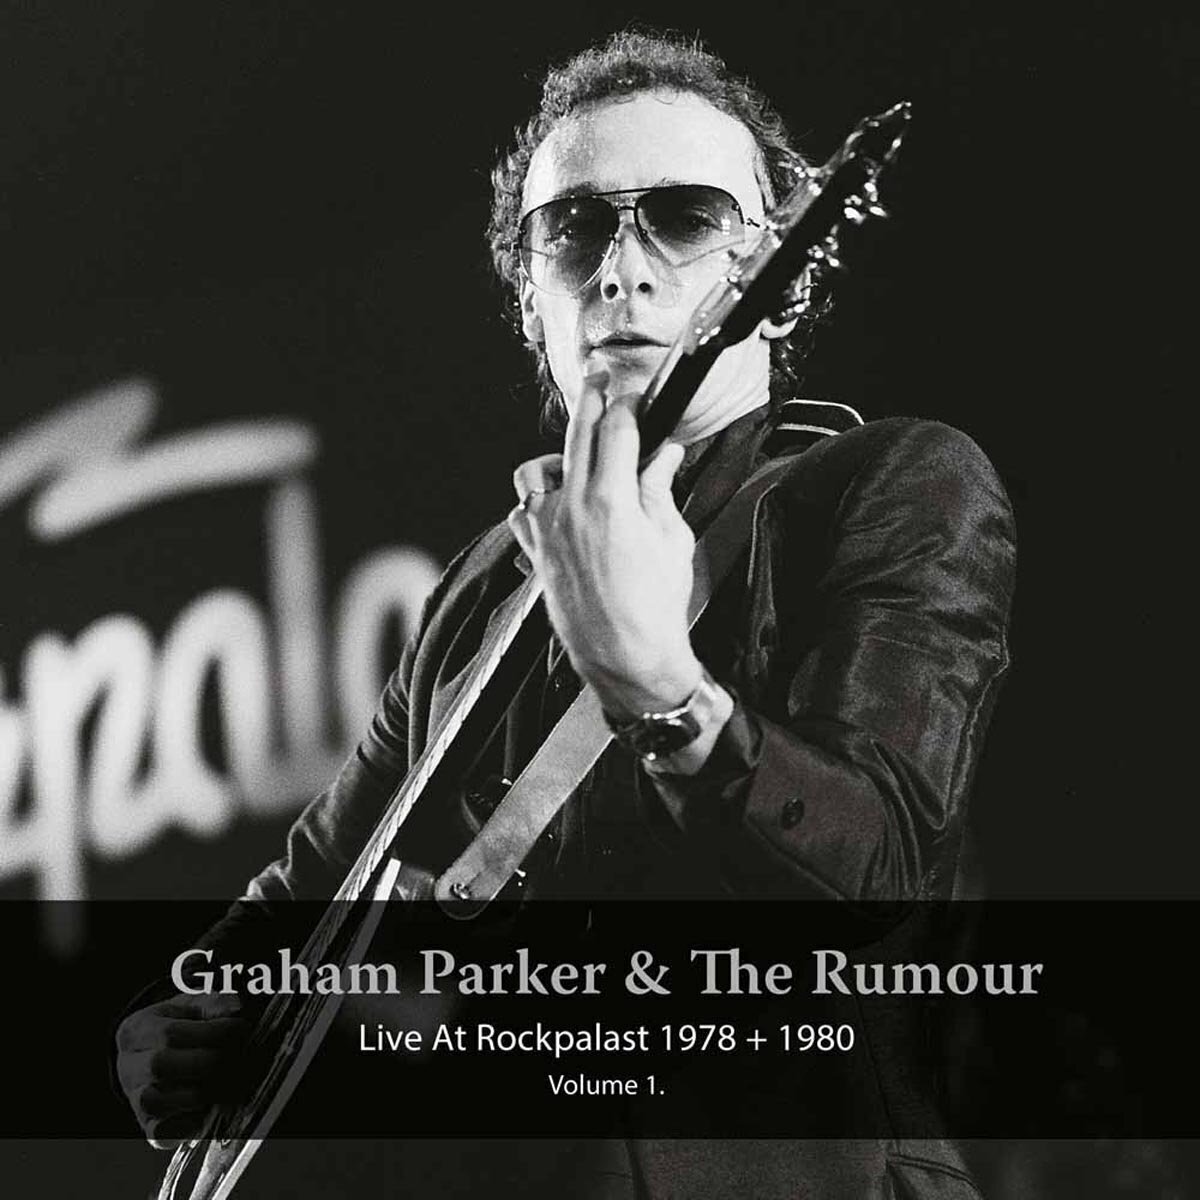 Disque vinyle Graham Parker & The Rumour - Live At Rockpalast 1978 + 1980 Vol 1 (2 LP)